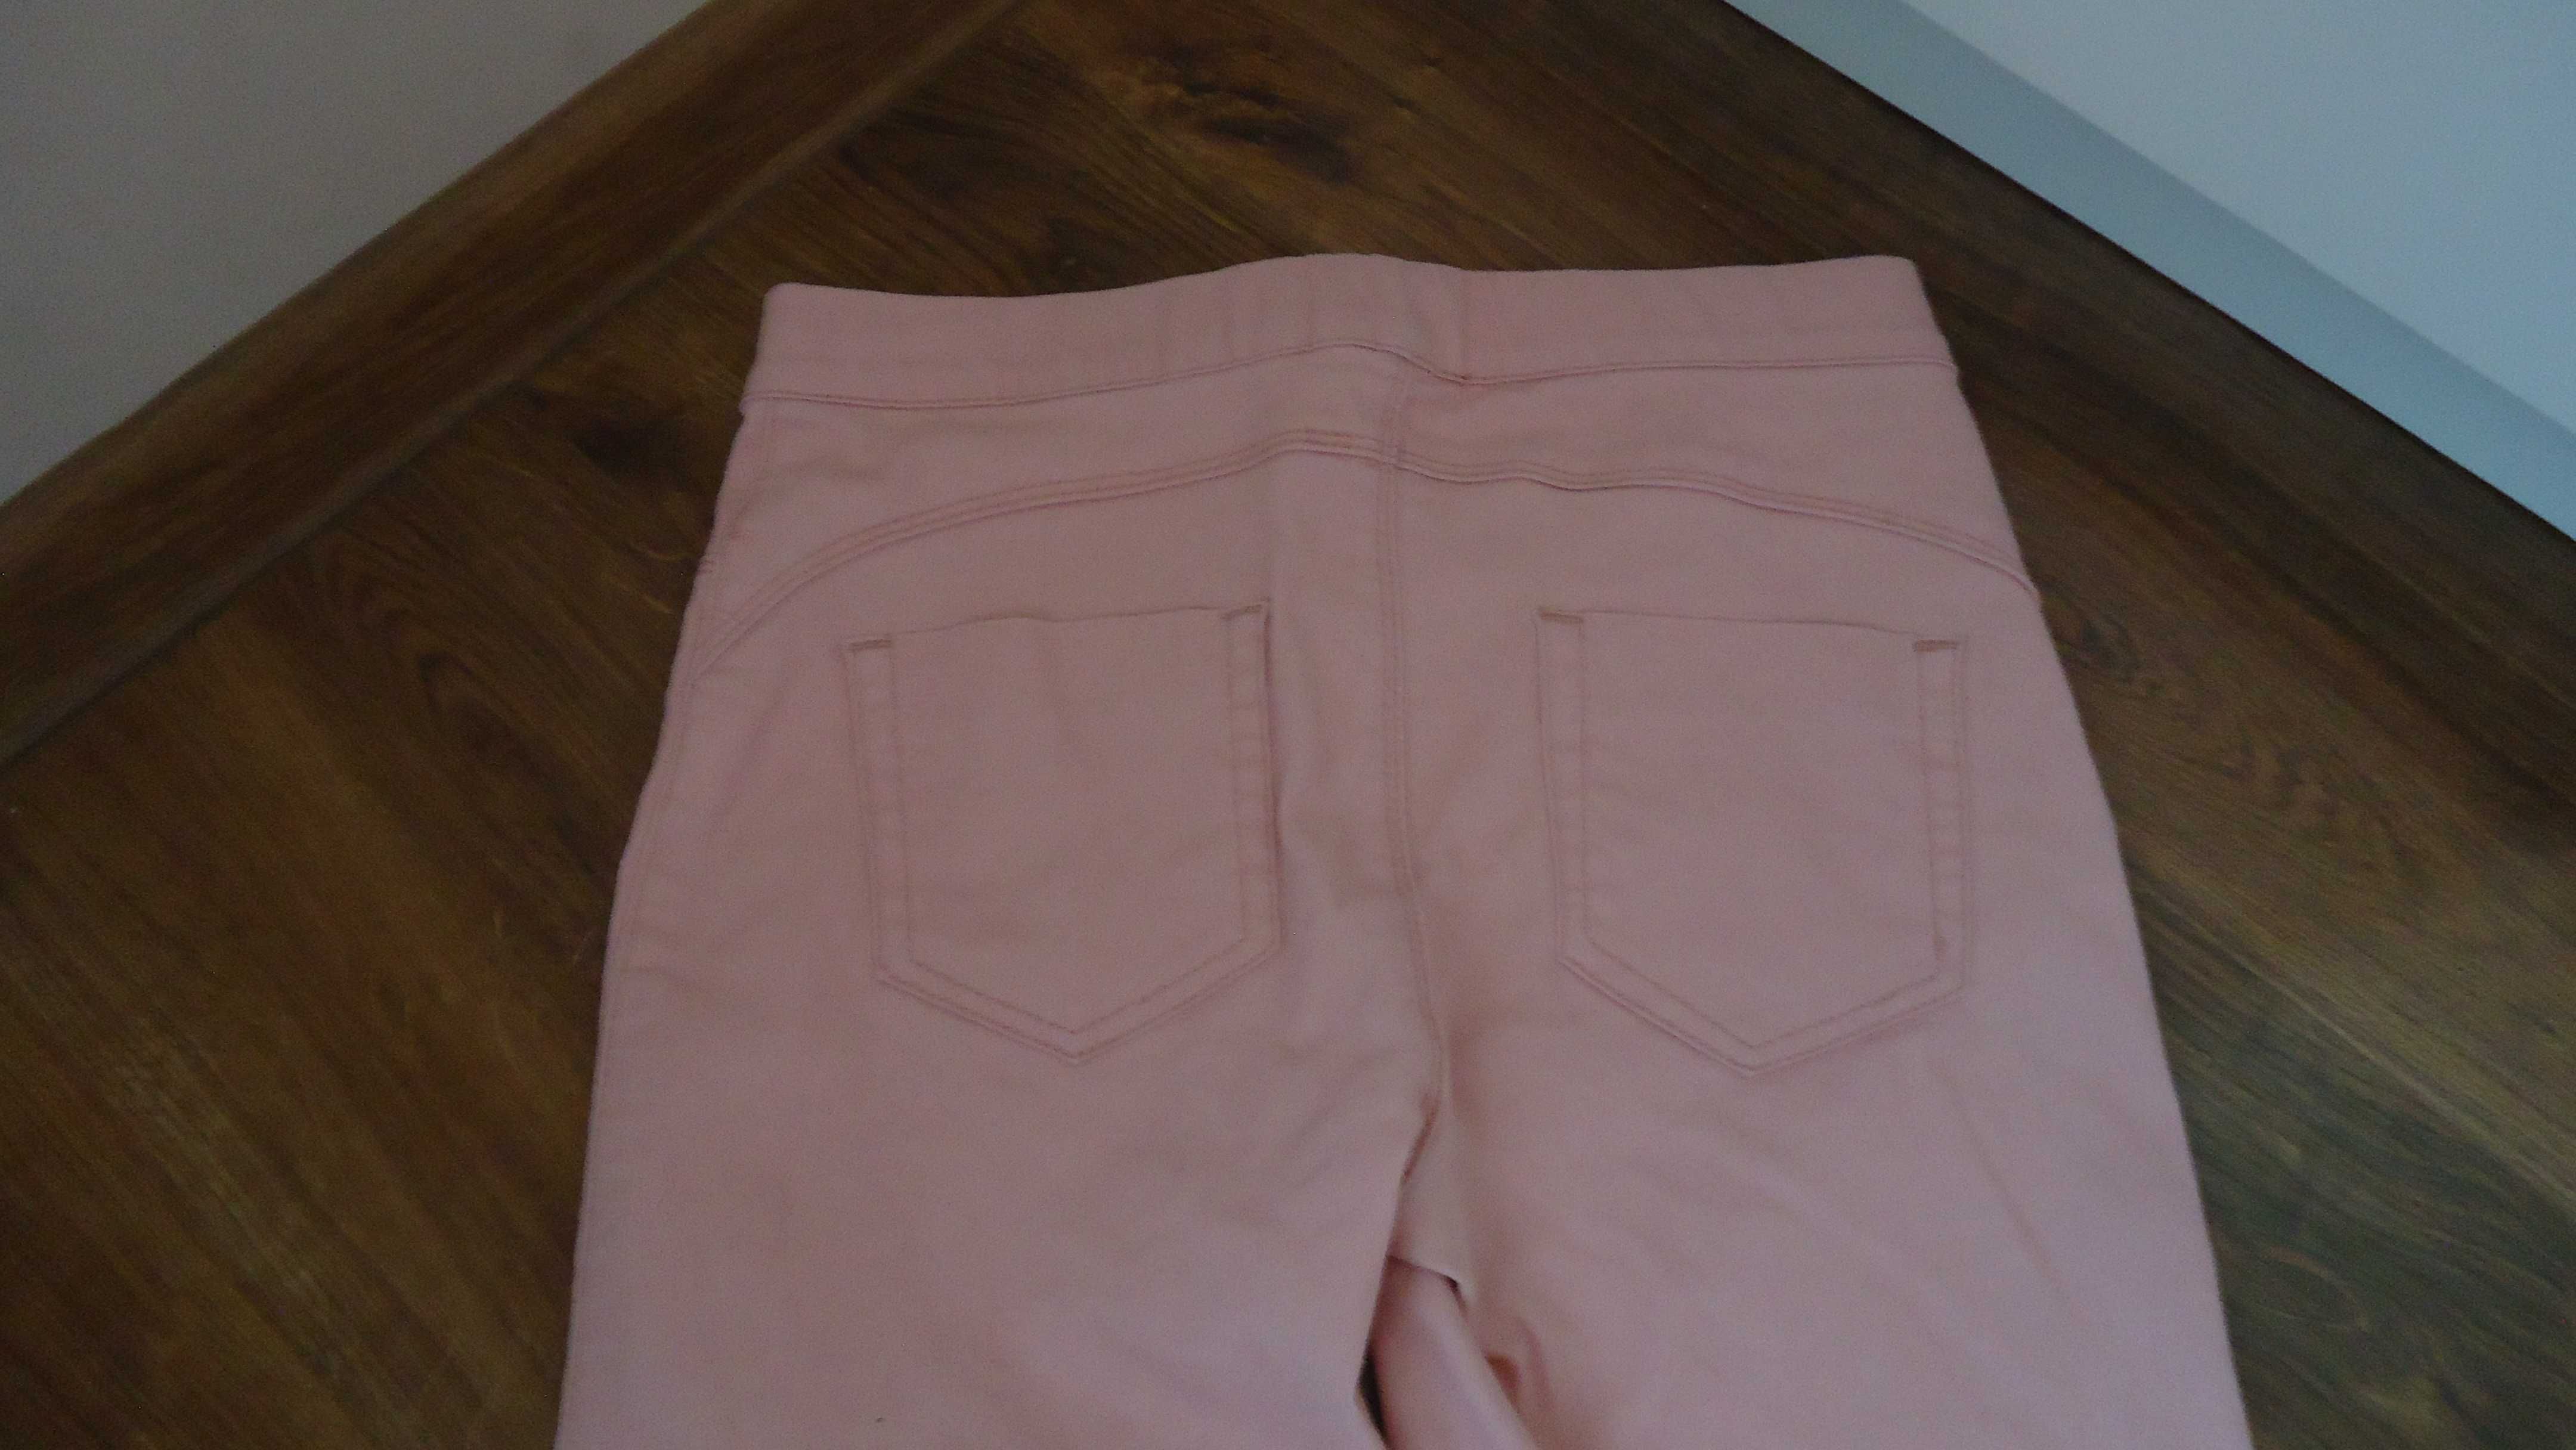 r.XS 34 dżinsowe legginsy różowe jegginsy różowe spodnie dżinoswe